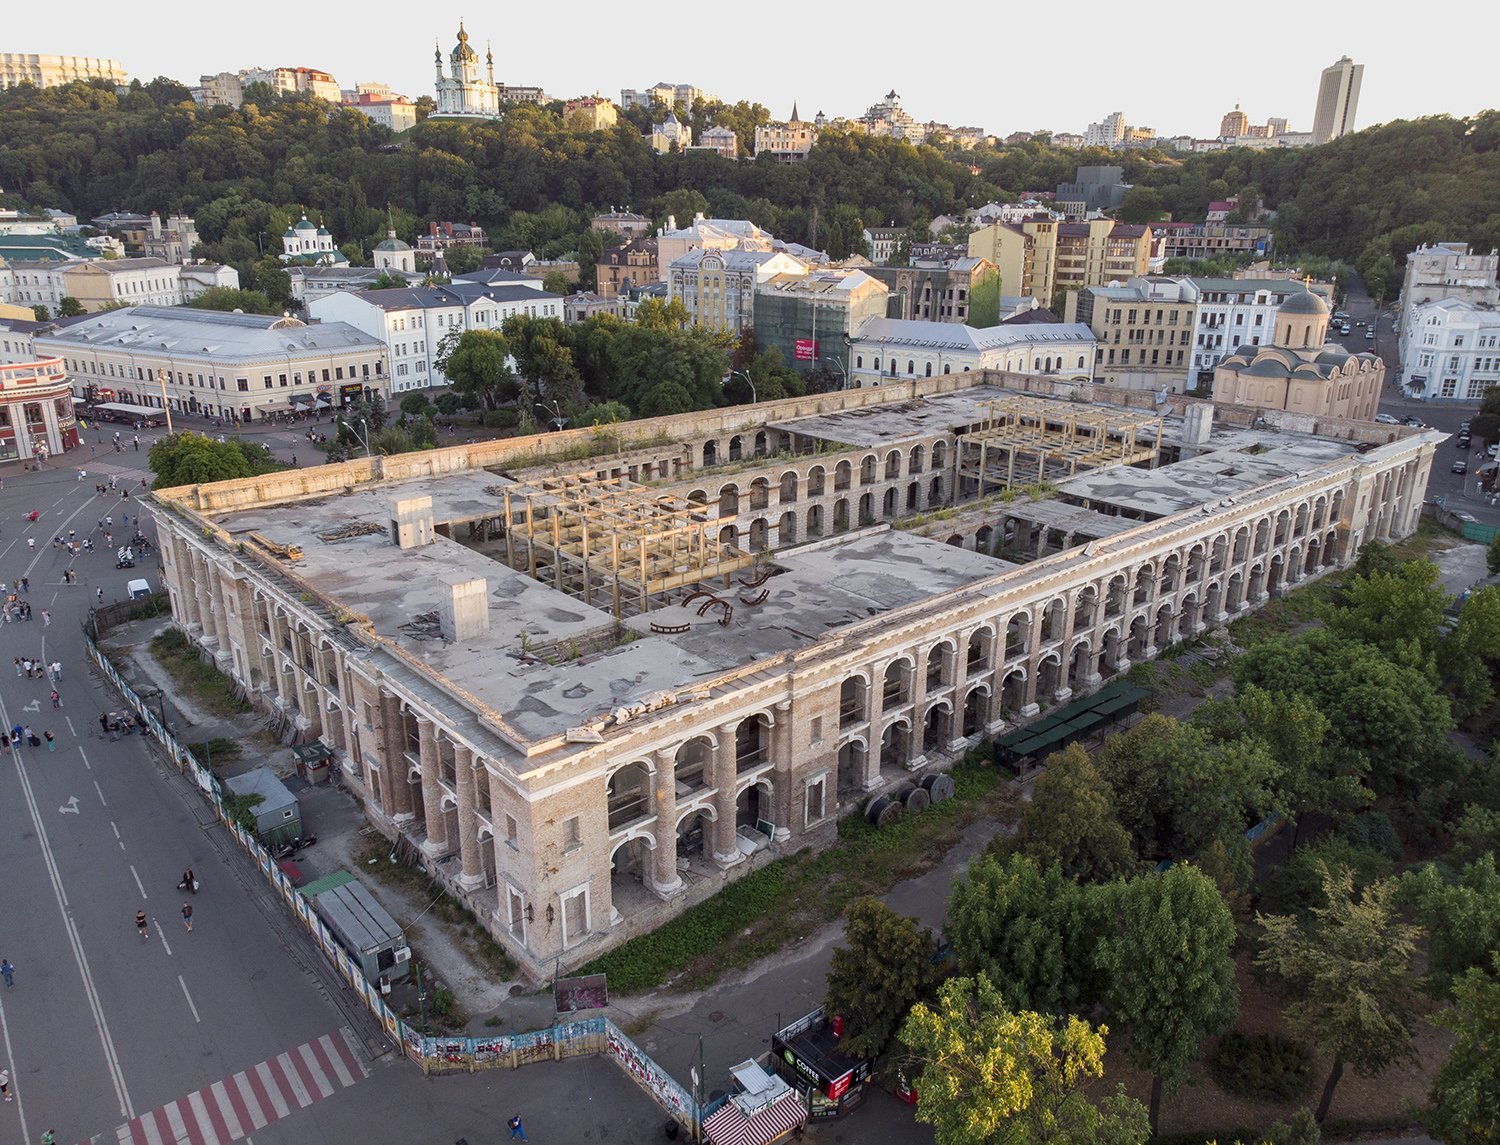 Община Киева требует передать ей Гостиный двор